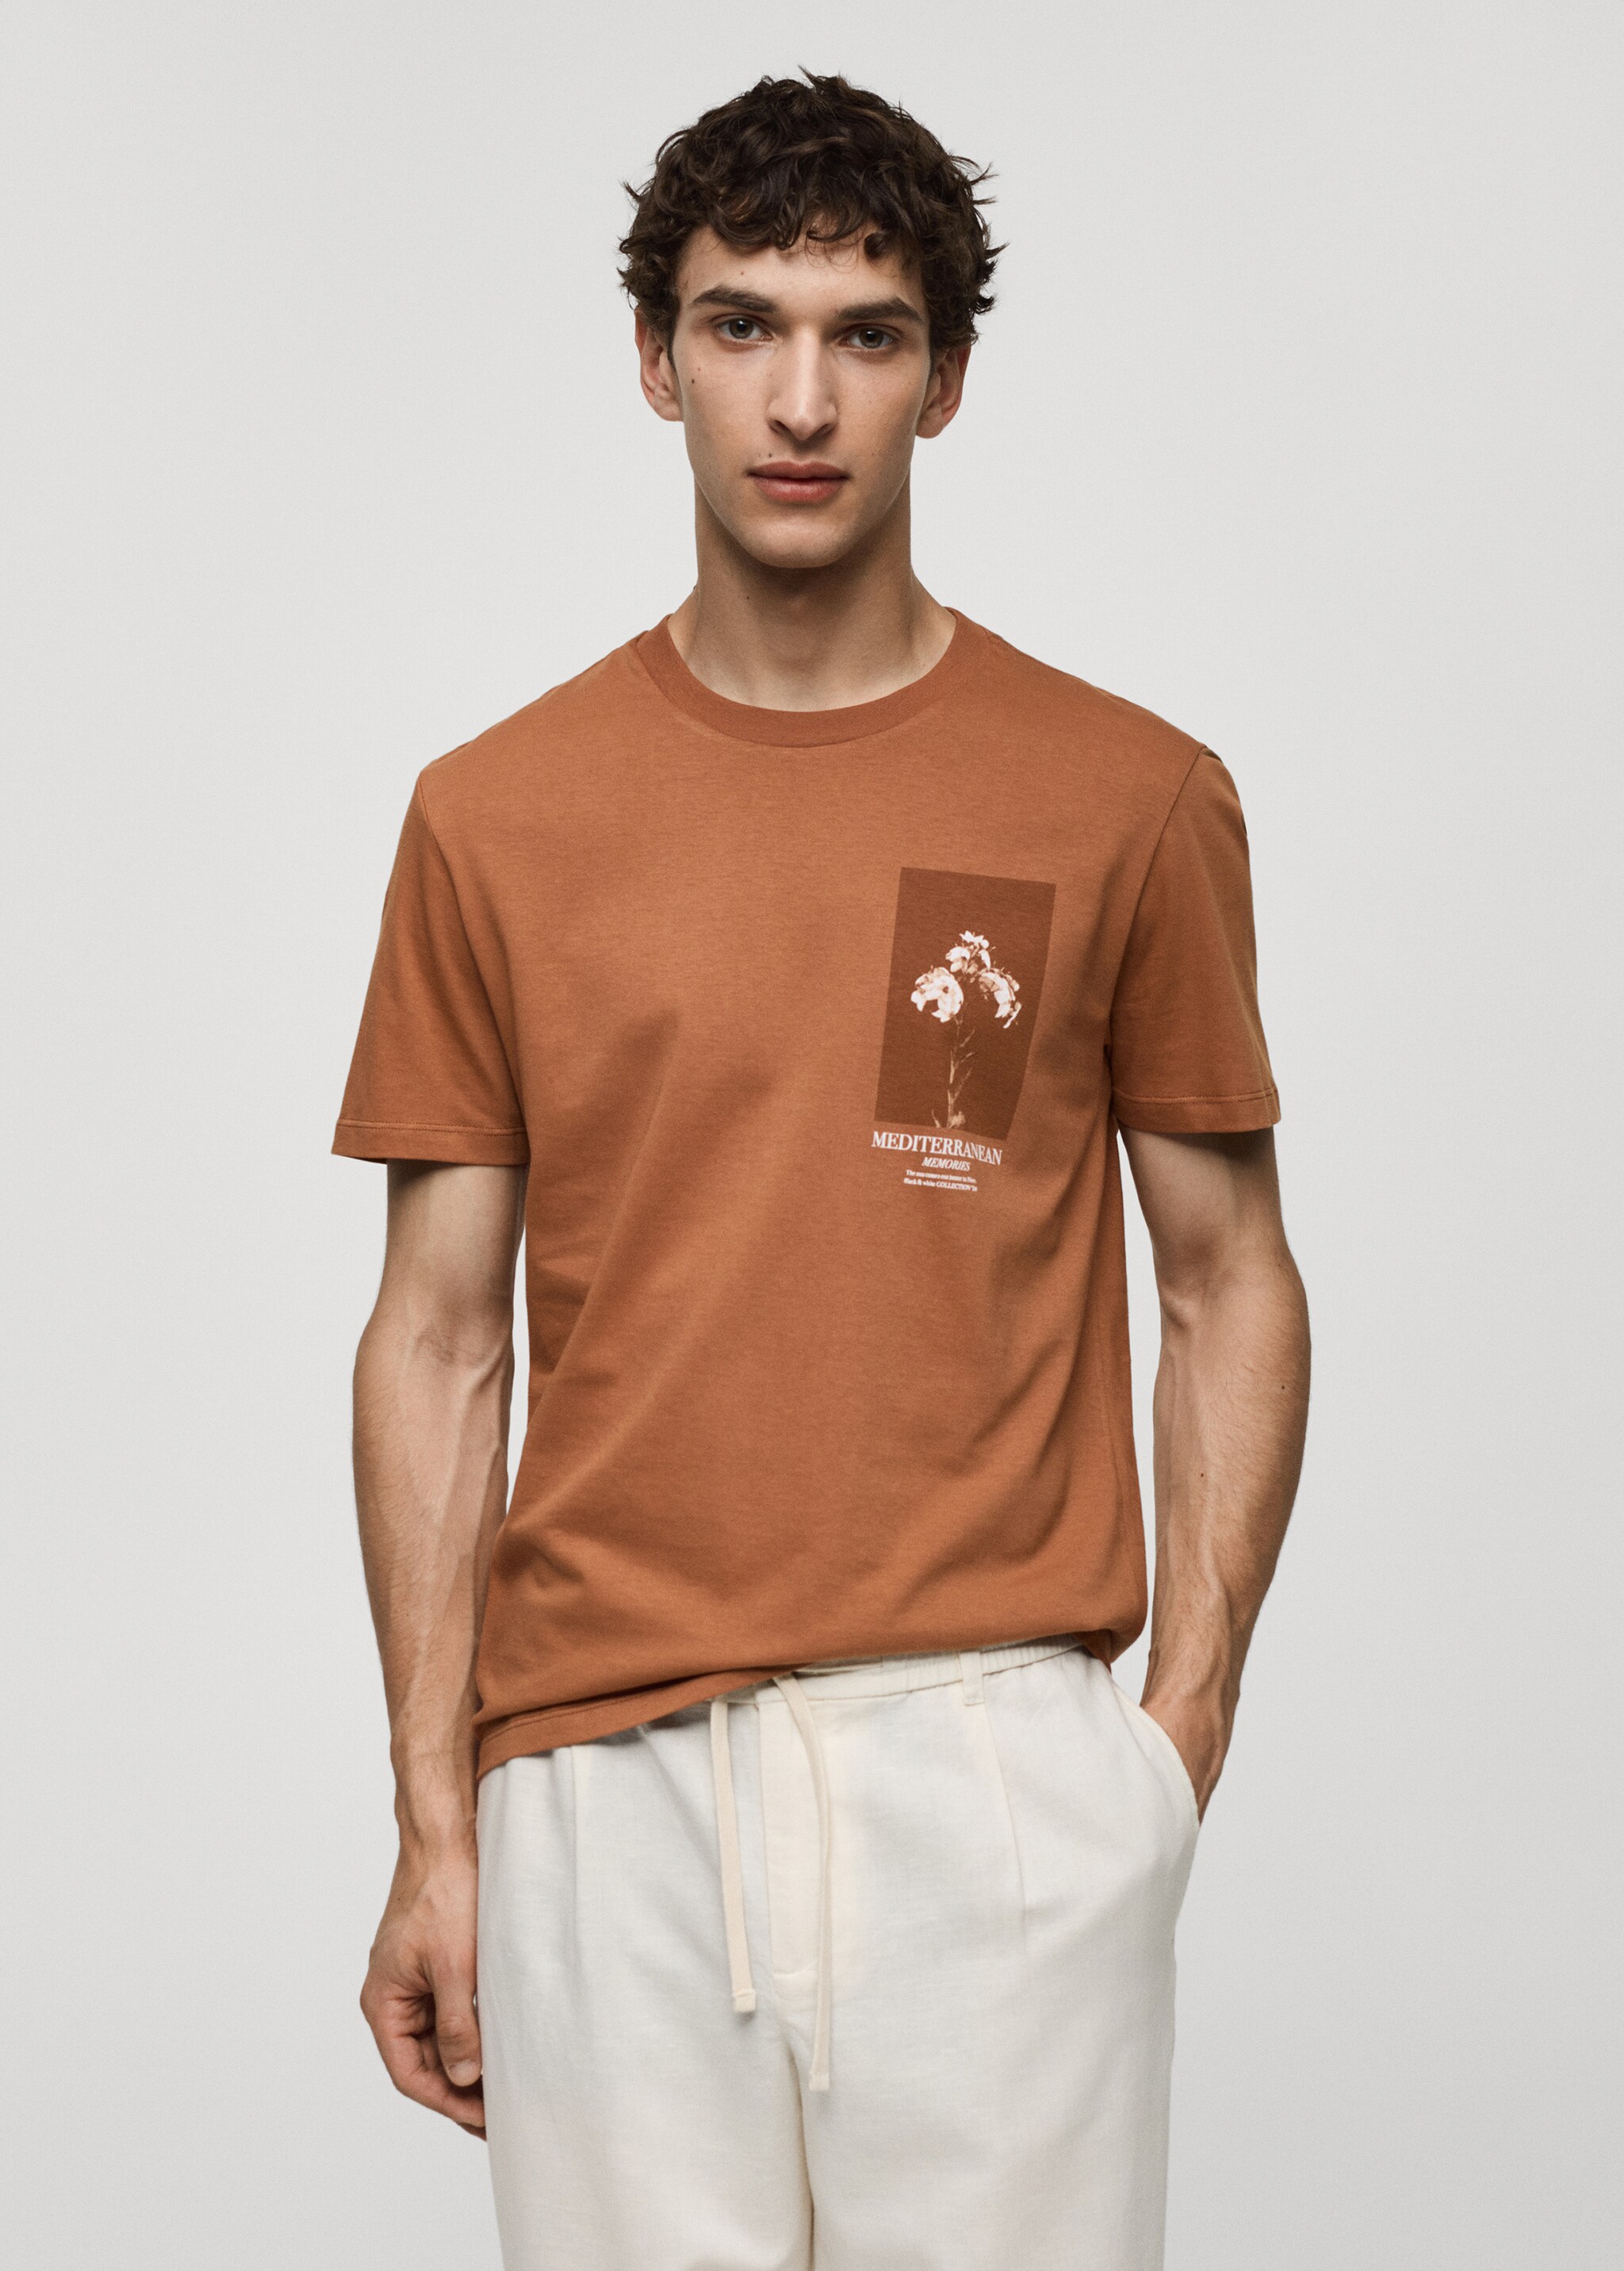 Slim fit 100% printed cotton t-shirt - Medium plane